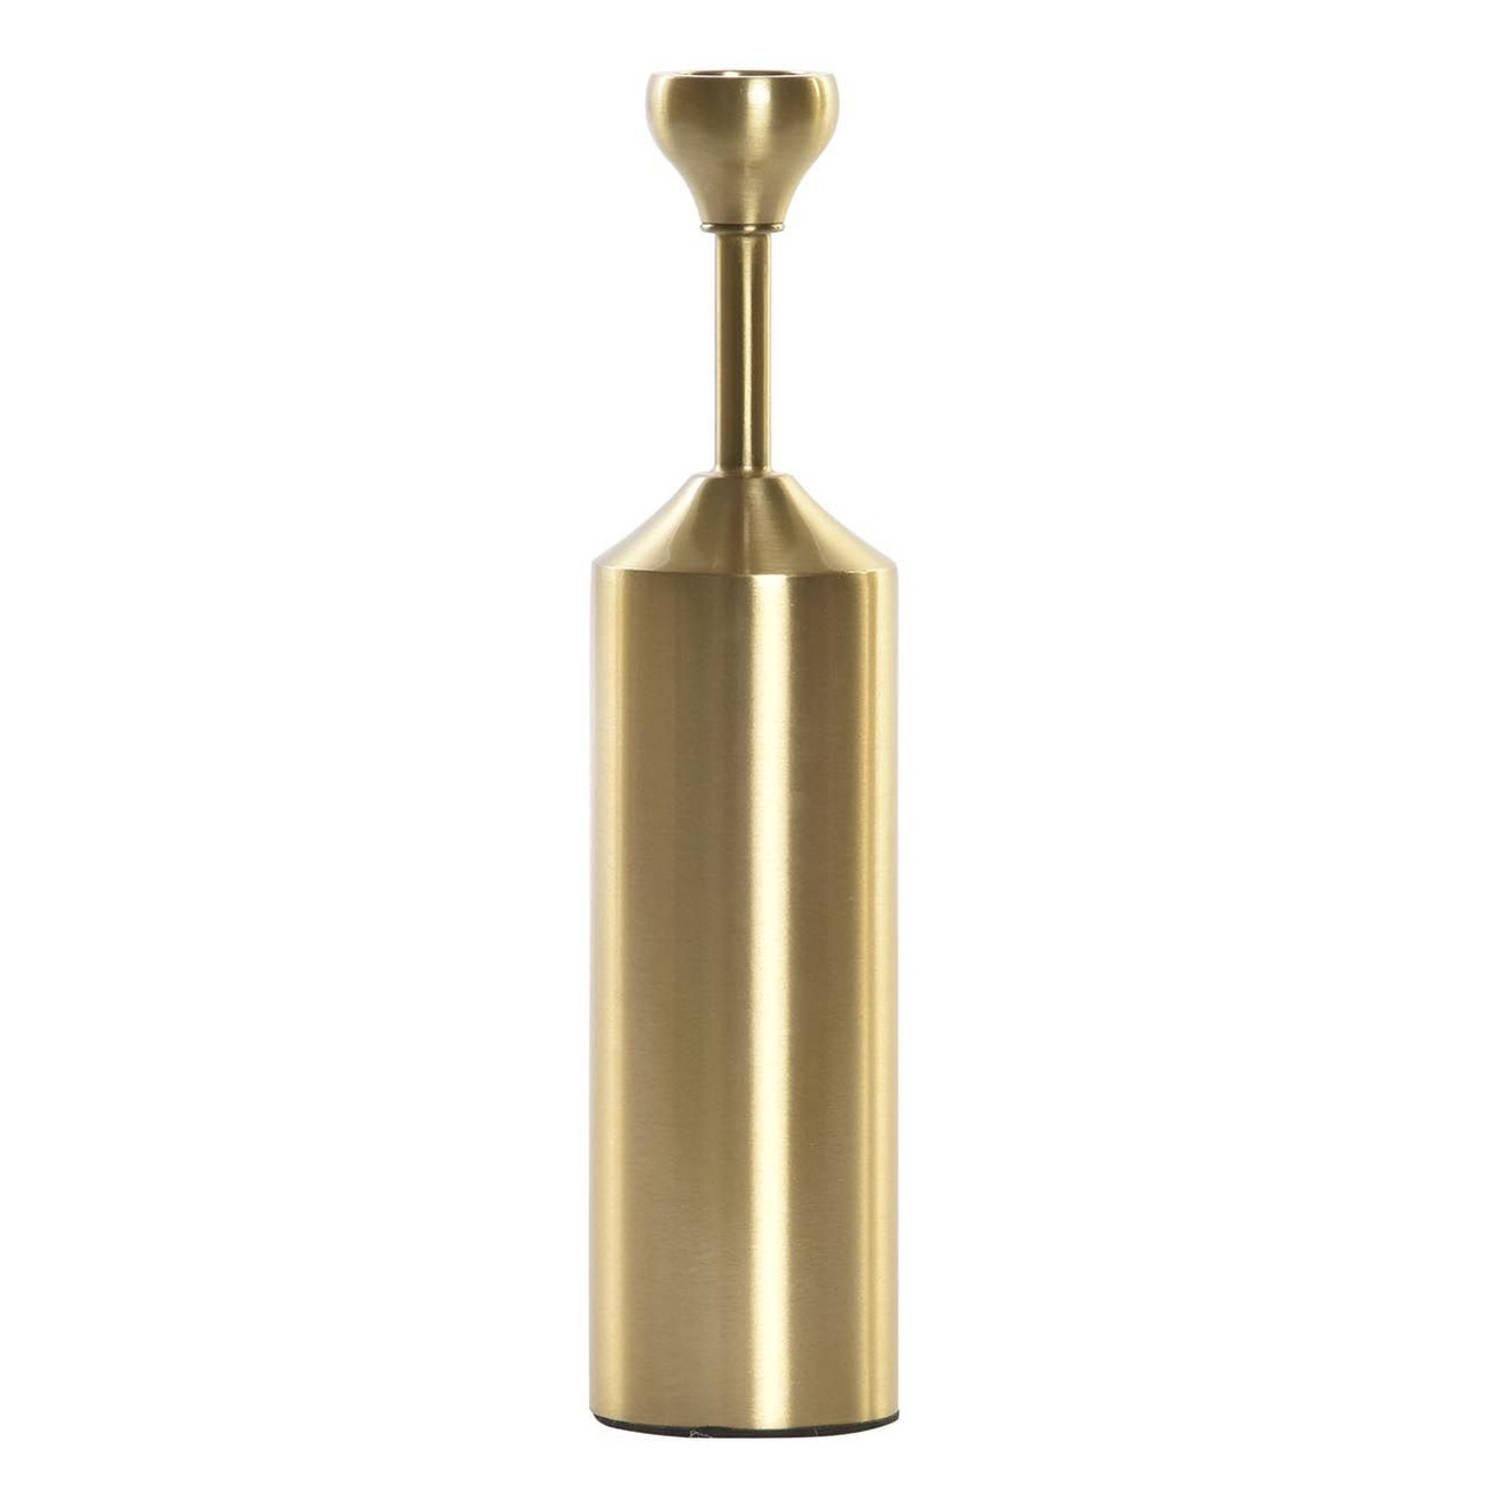 Luxe kaarsenhouder/kandelaar goud metaal 5 x 5 x 22 cm - kaars kandelaars